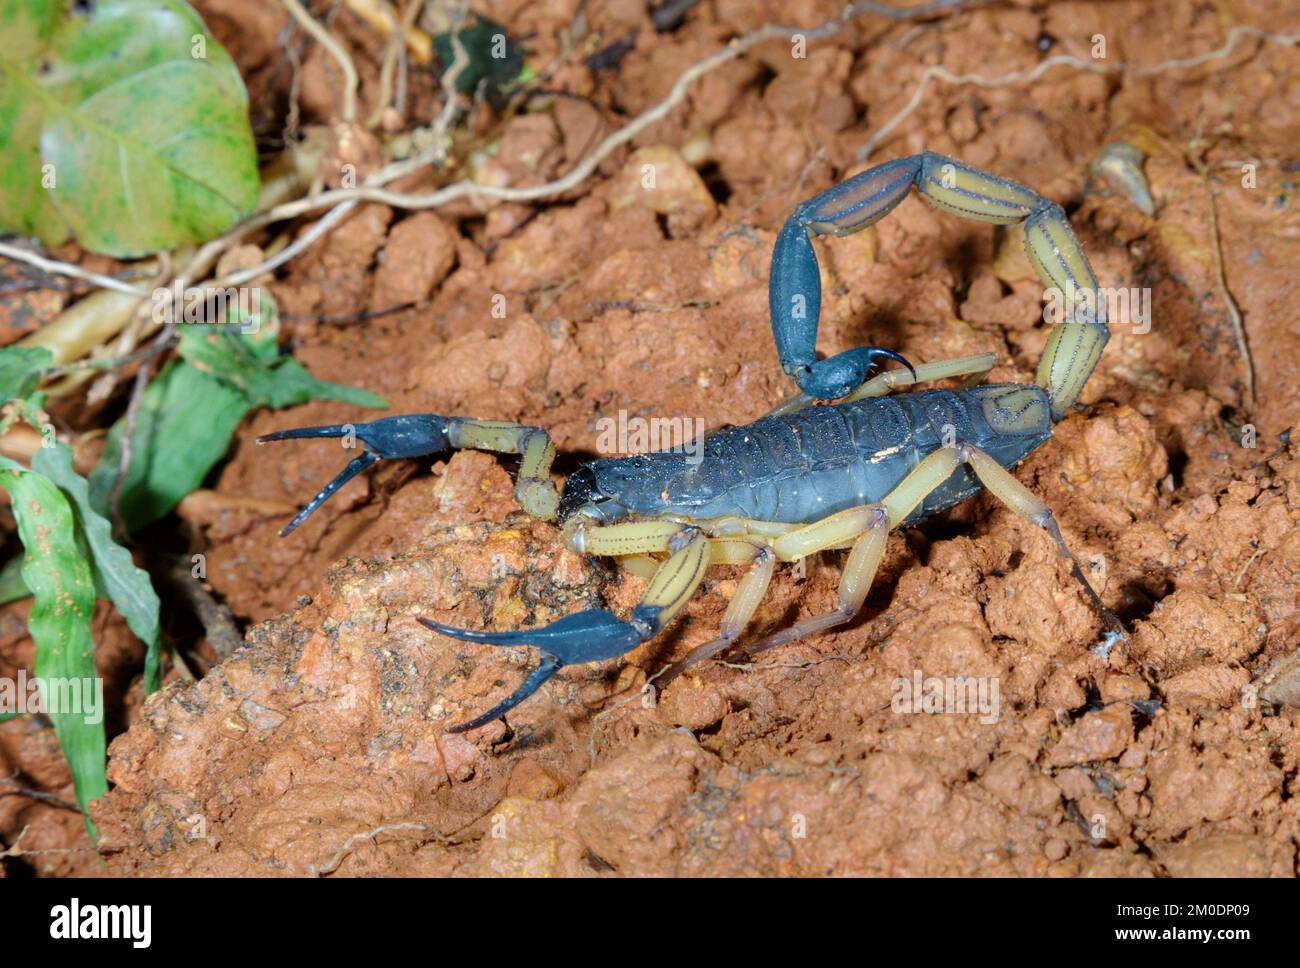 Scorpion d'écorce bicolore (Centruroides bicolor) dans la forêt tropicale, péninsule d'Osa, Puntarenas, Costa Rica. Banque D'Images